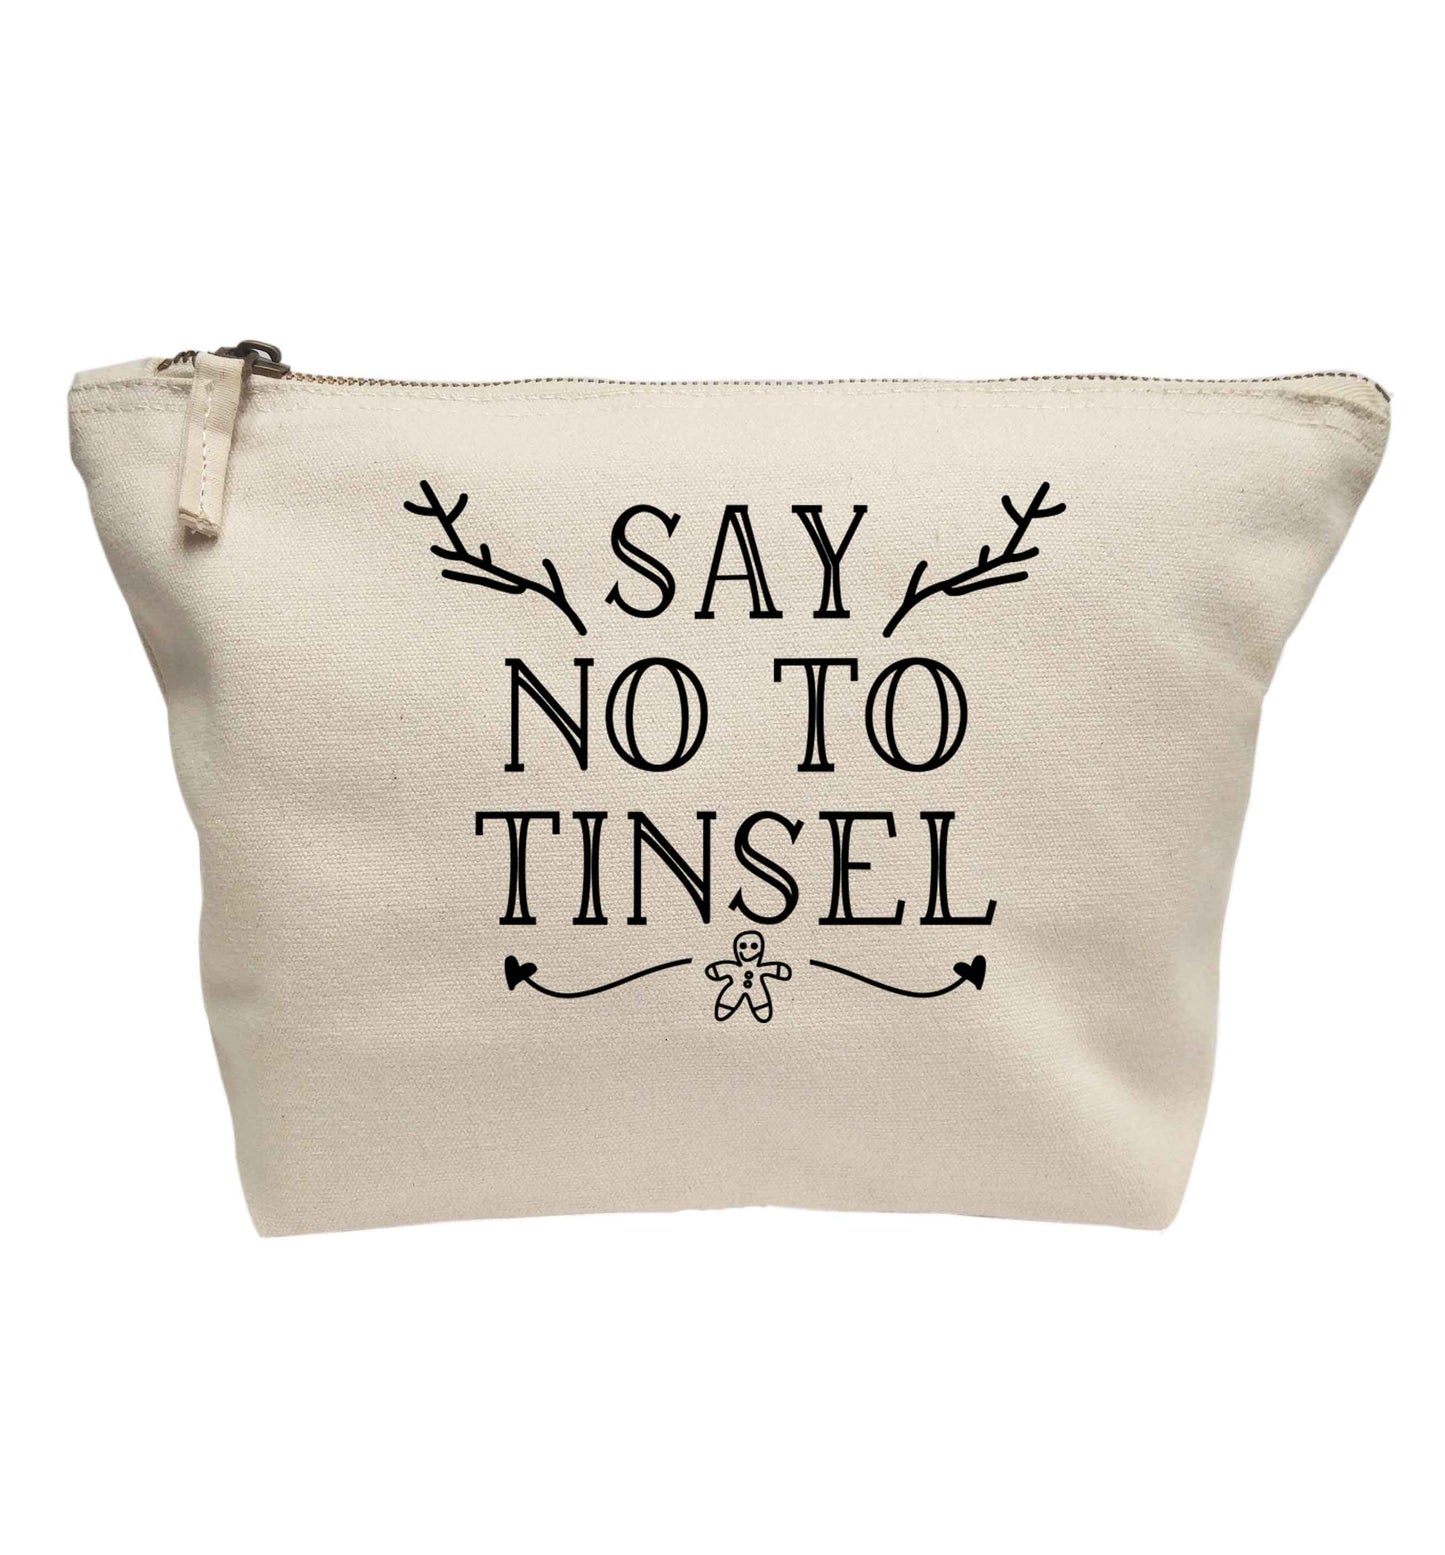 Say no to tinsel | makeup / wash bag